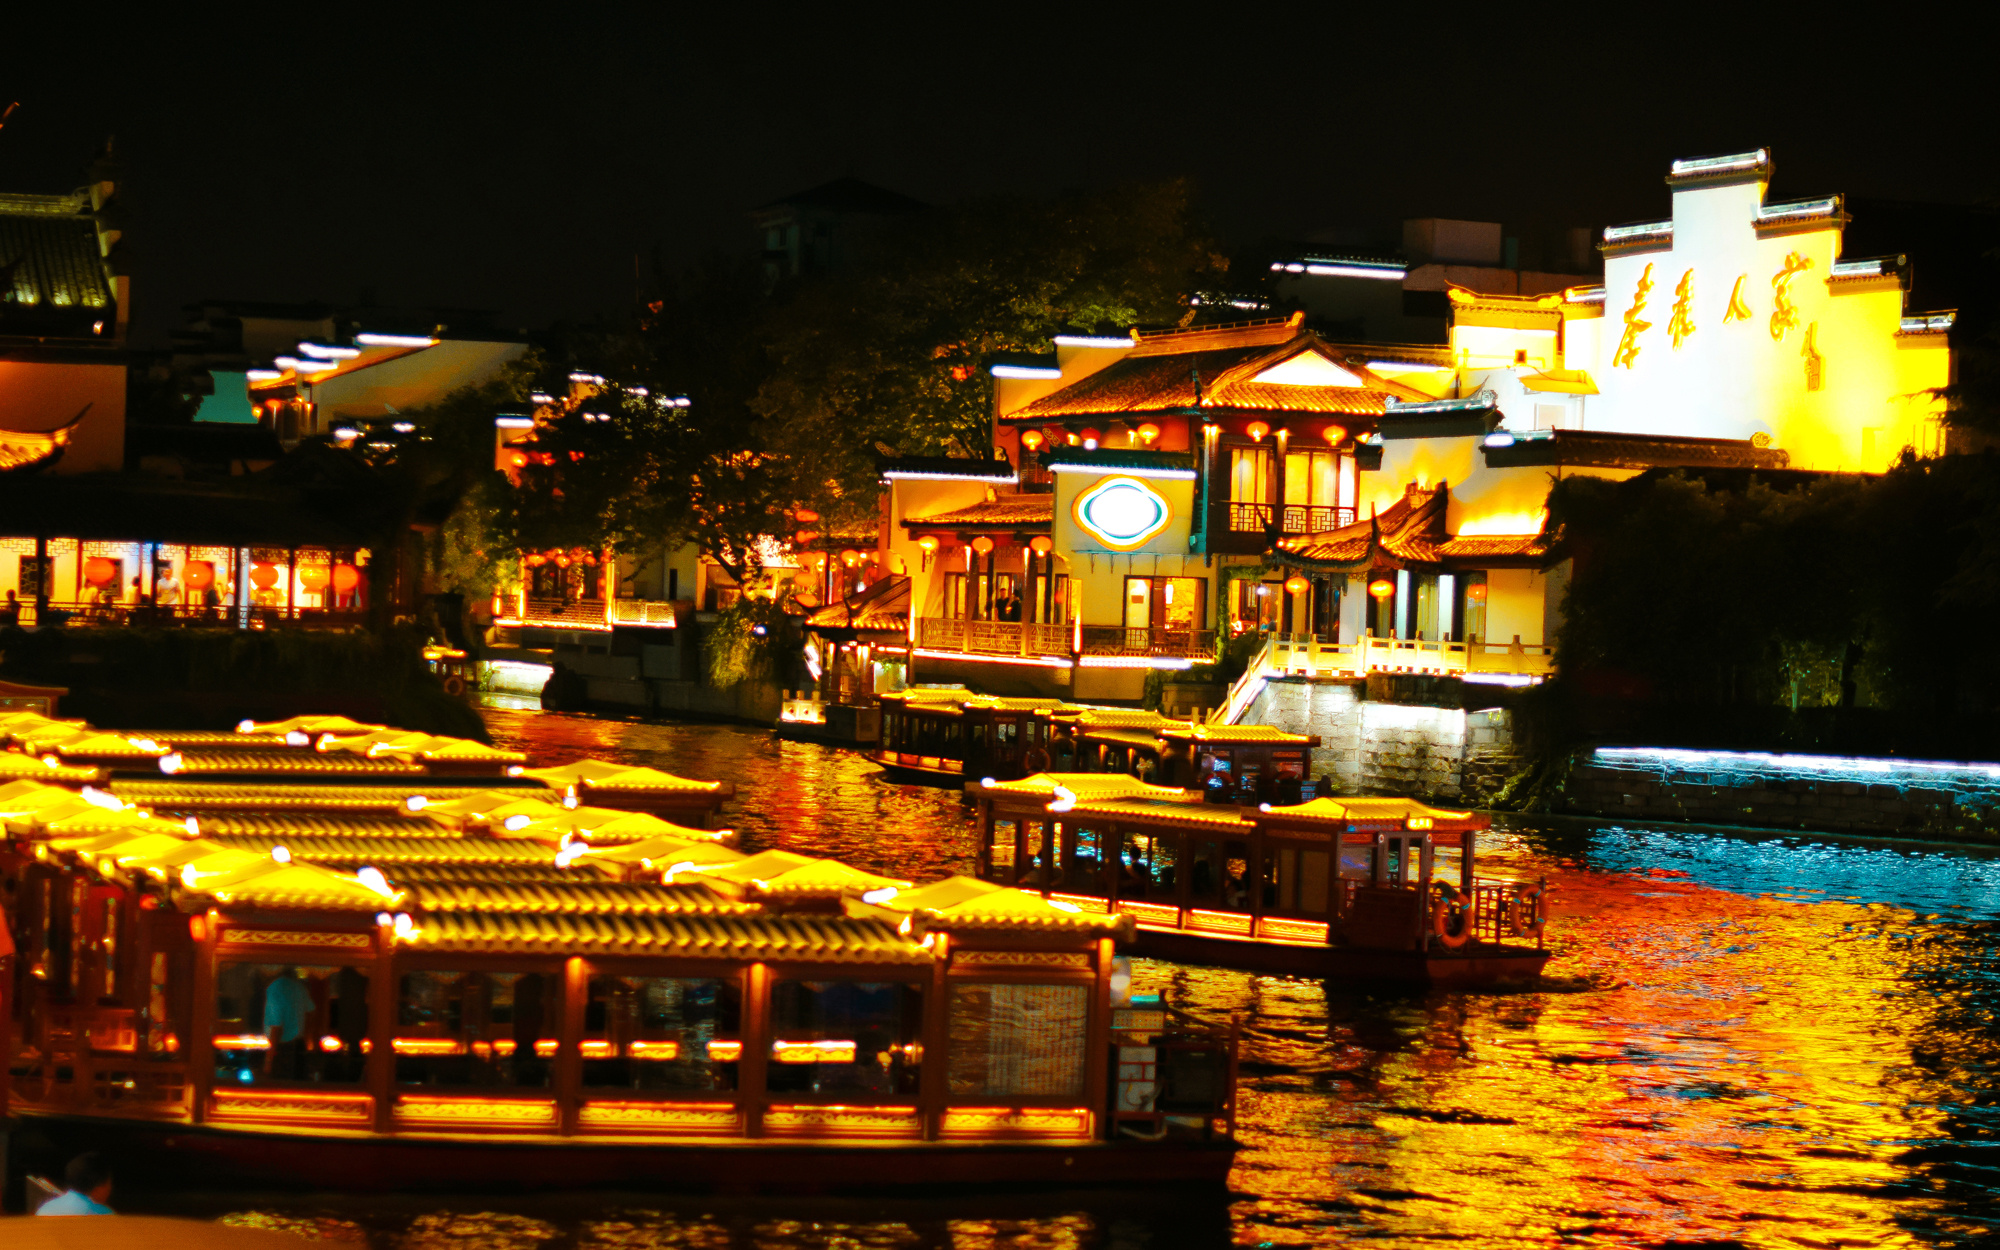 Qinhuai River In Nanjing Jiangsu Province Picture And HD Photos | Free ...